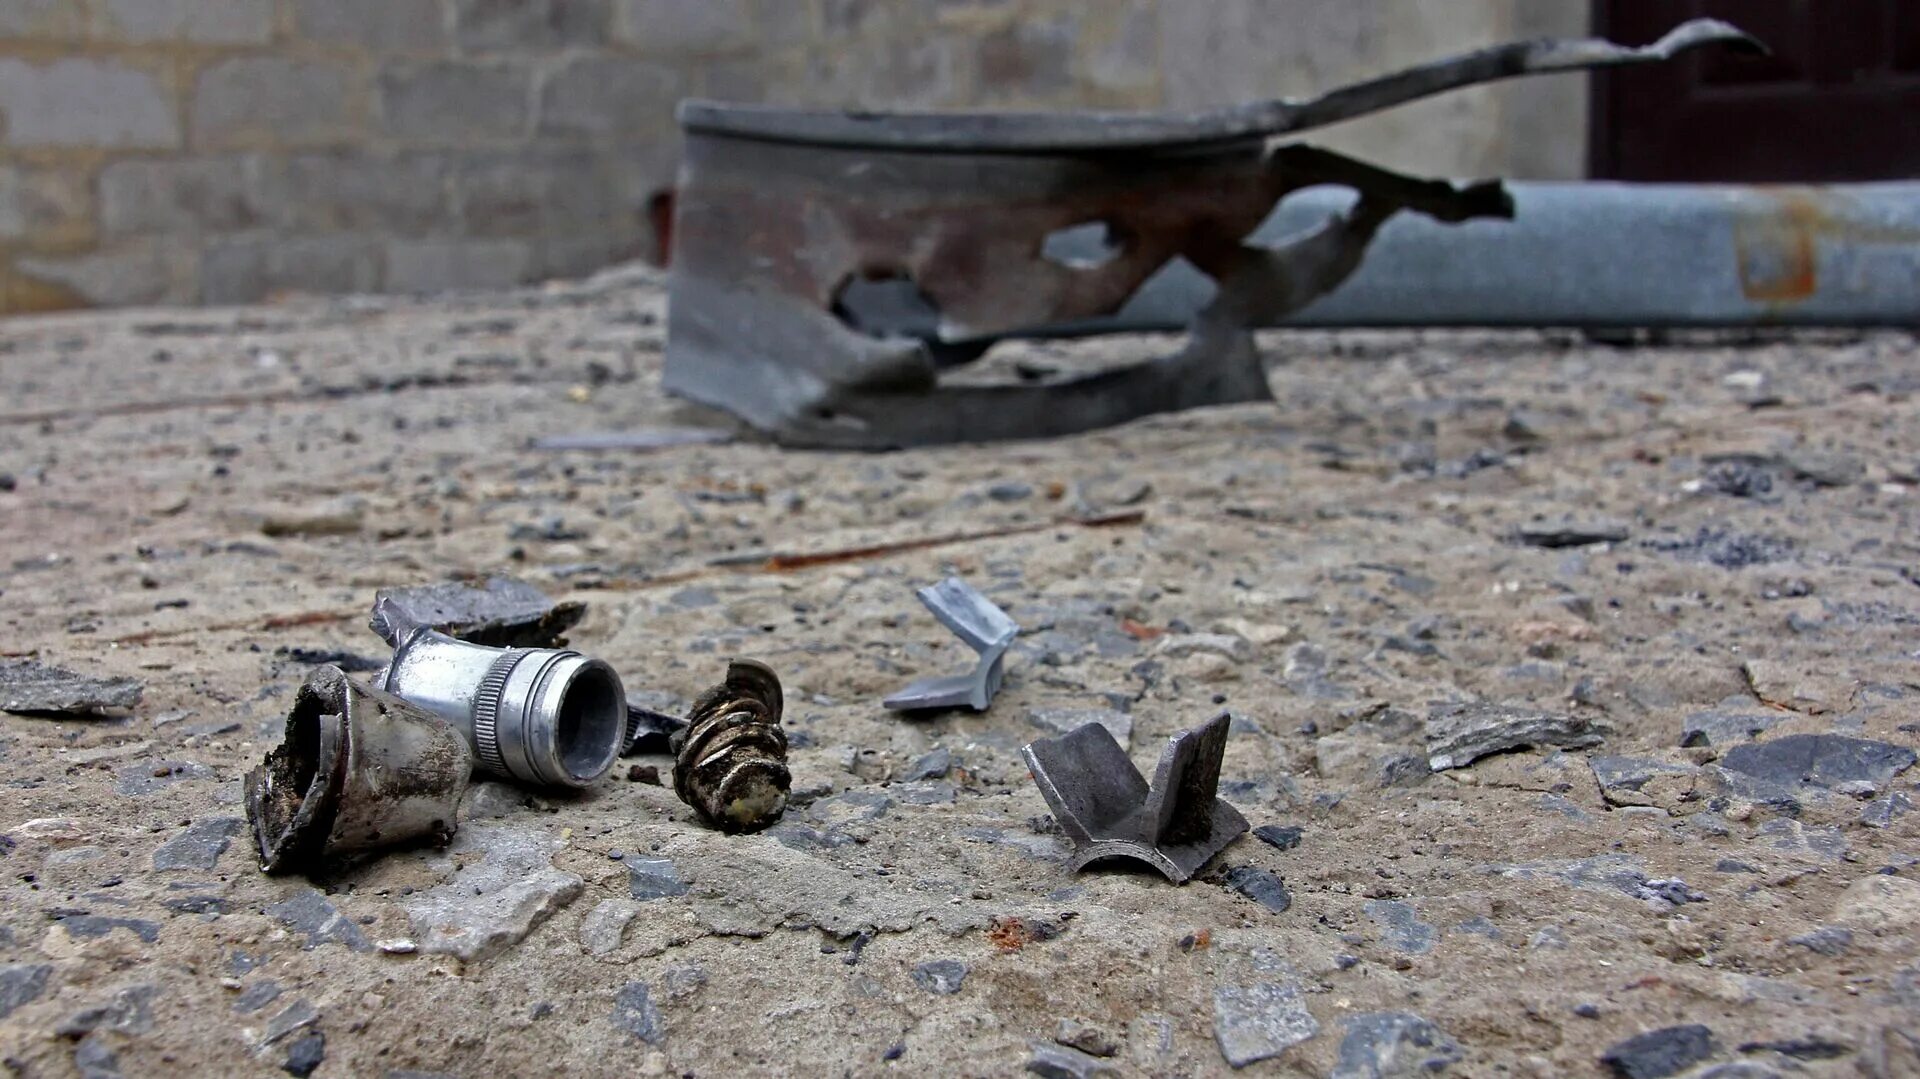 Обстрелы со стороны всу сегодня. Кассетные бомбы. Осколки снаряда Украина.